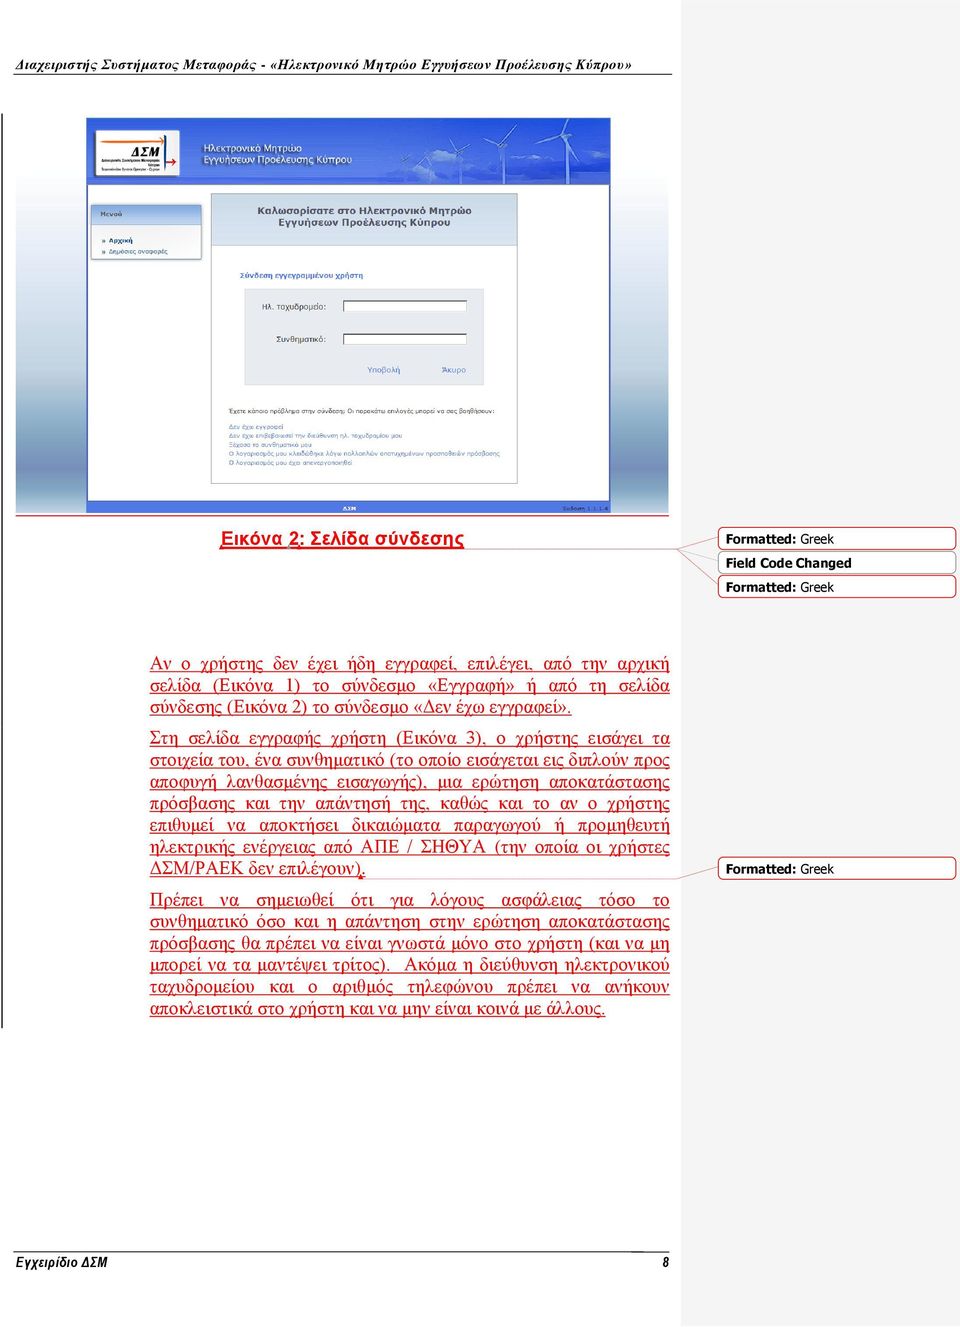 Στη σελίδα εγγραφής χρήστη (Εικόνα 3), ο χρήστης εισάγει τα στοιχεία του, ένα συνθηματικό (το οποίο εισάγεται εις διπλούν προς αποφυγή λανθασμένης εισαγωγής), μια ερώτηση αποκατάστασης πρόσβασης και